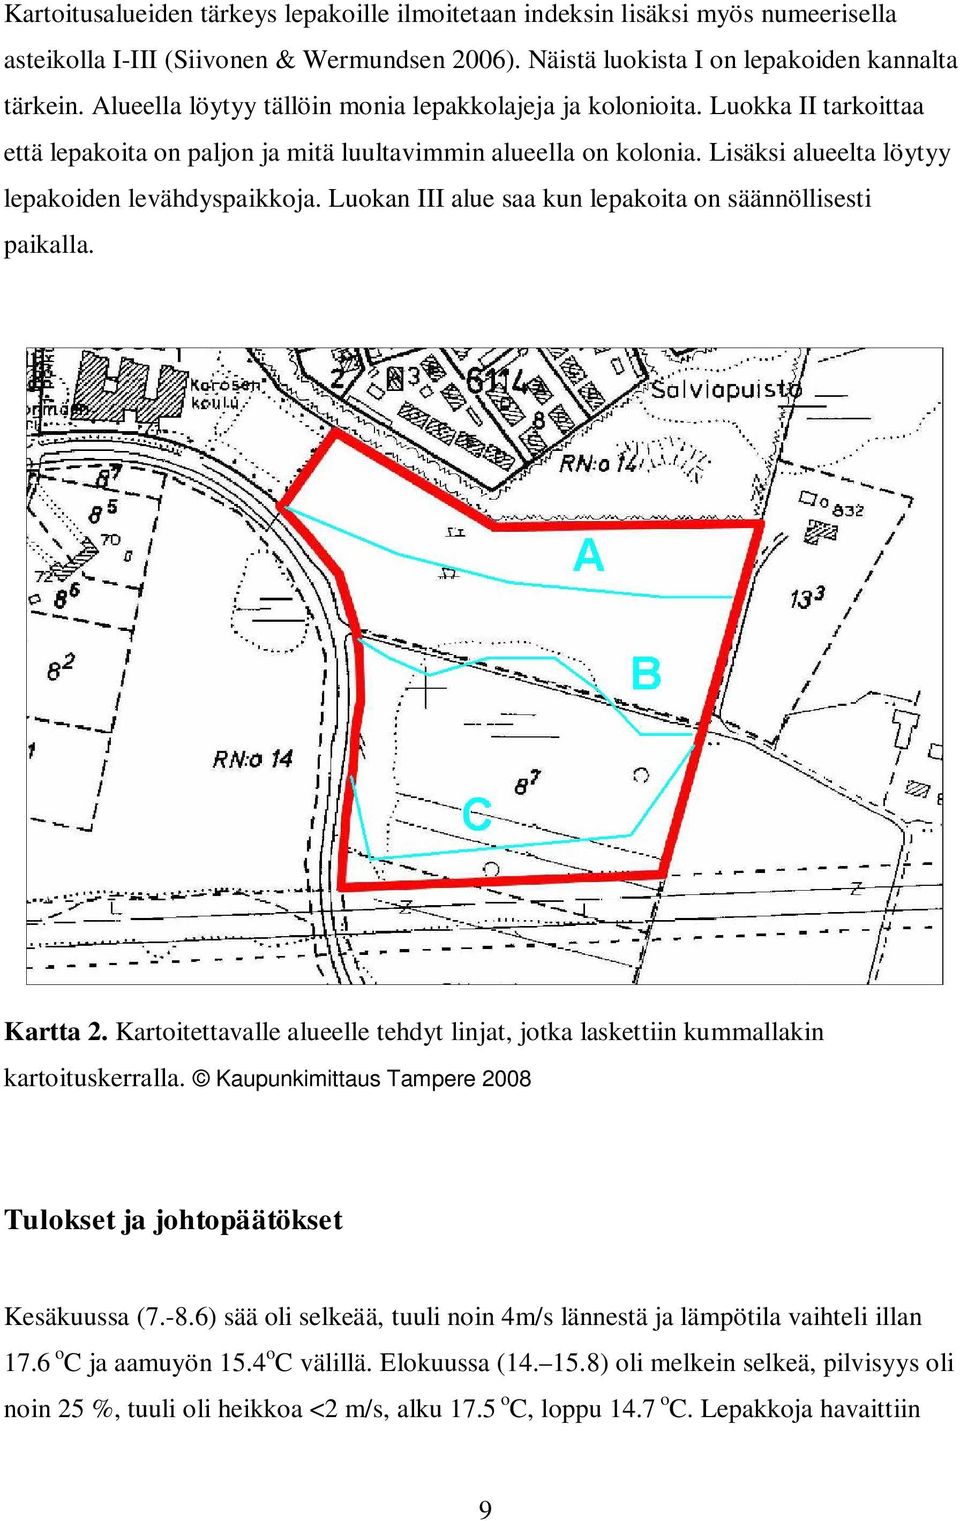 Luokan III alue saa kun lepakoita on säännöllisesti paikalla. Kartta 2. Kartoitettavalle alueelle tehdyt linjat, jotka laskettiin kummallakin kartoituskerralla.